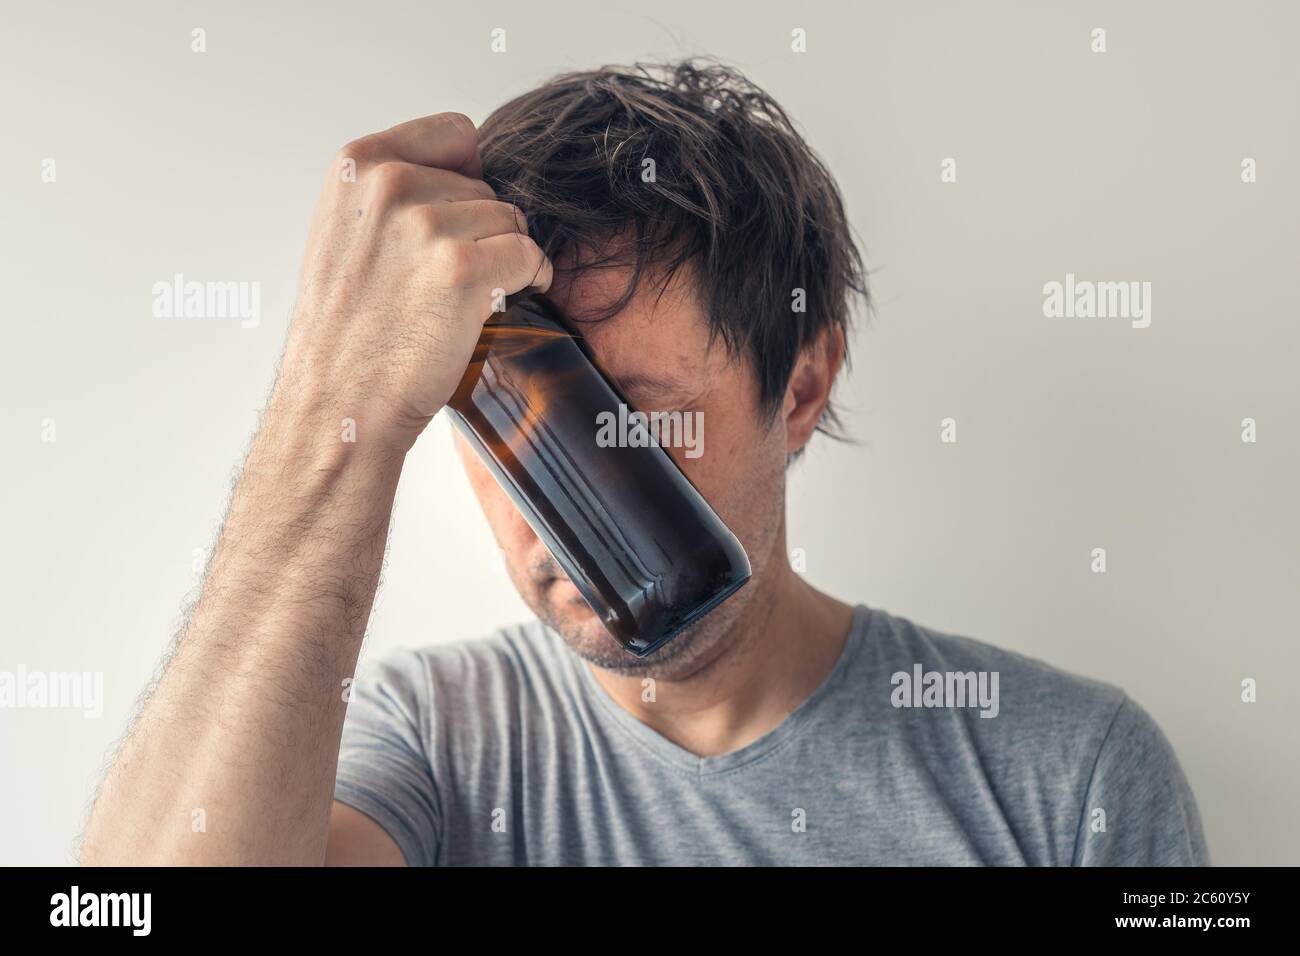 Alkoholismus und Kater Konzept, Mann mit Bierflasche Stockfoto